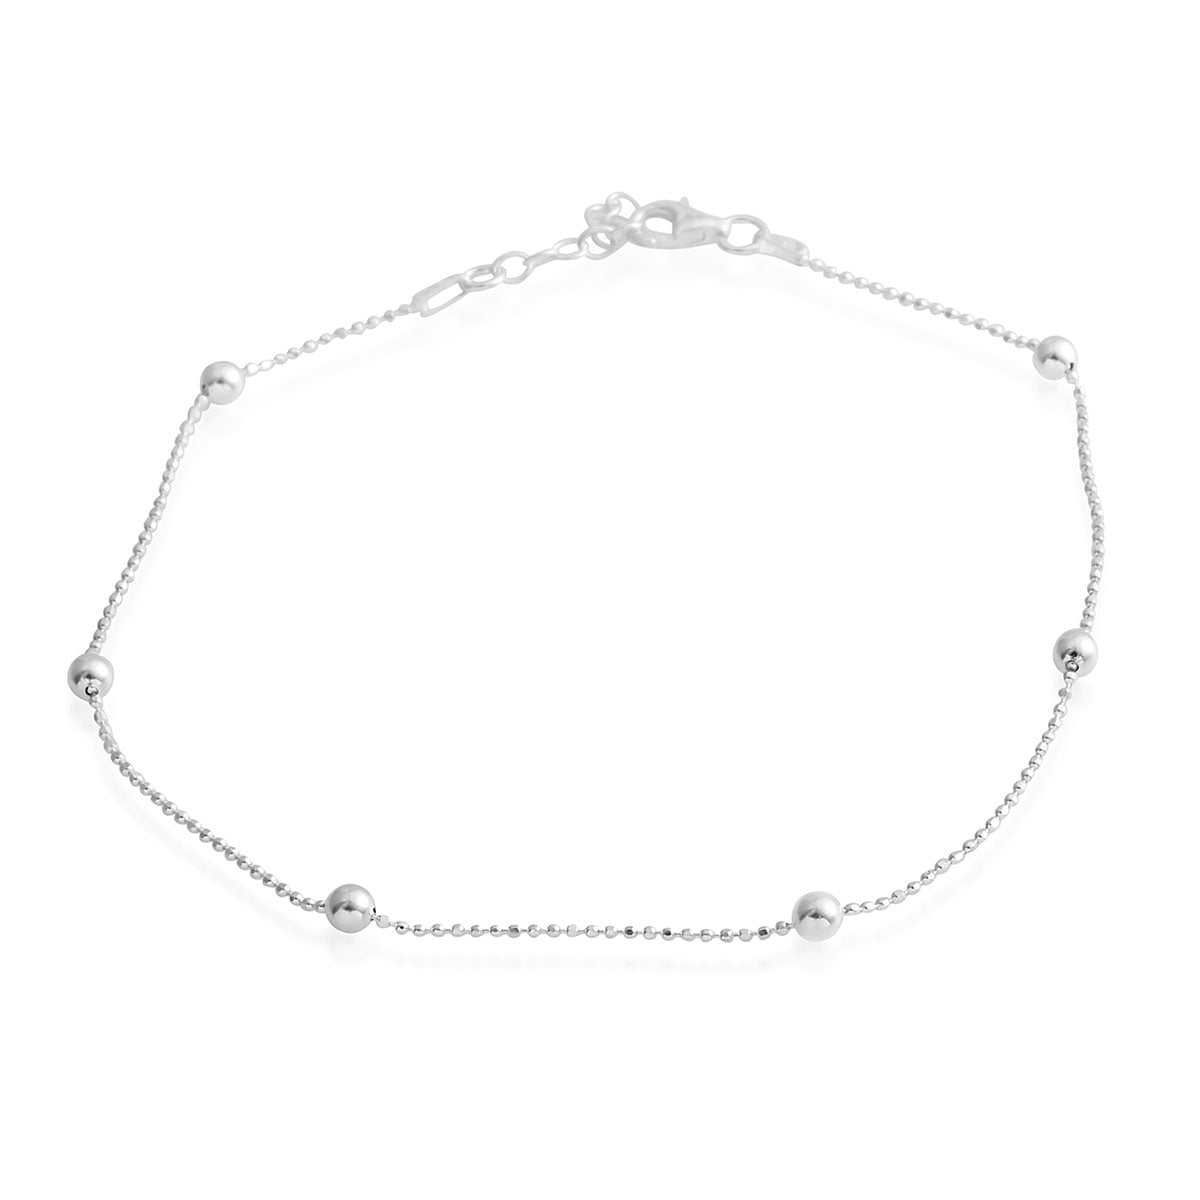 Splendid charm bracelet-sterling silver bracelet-womens silver bracelet-silver bracelets for women